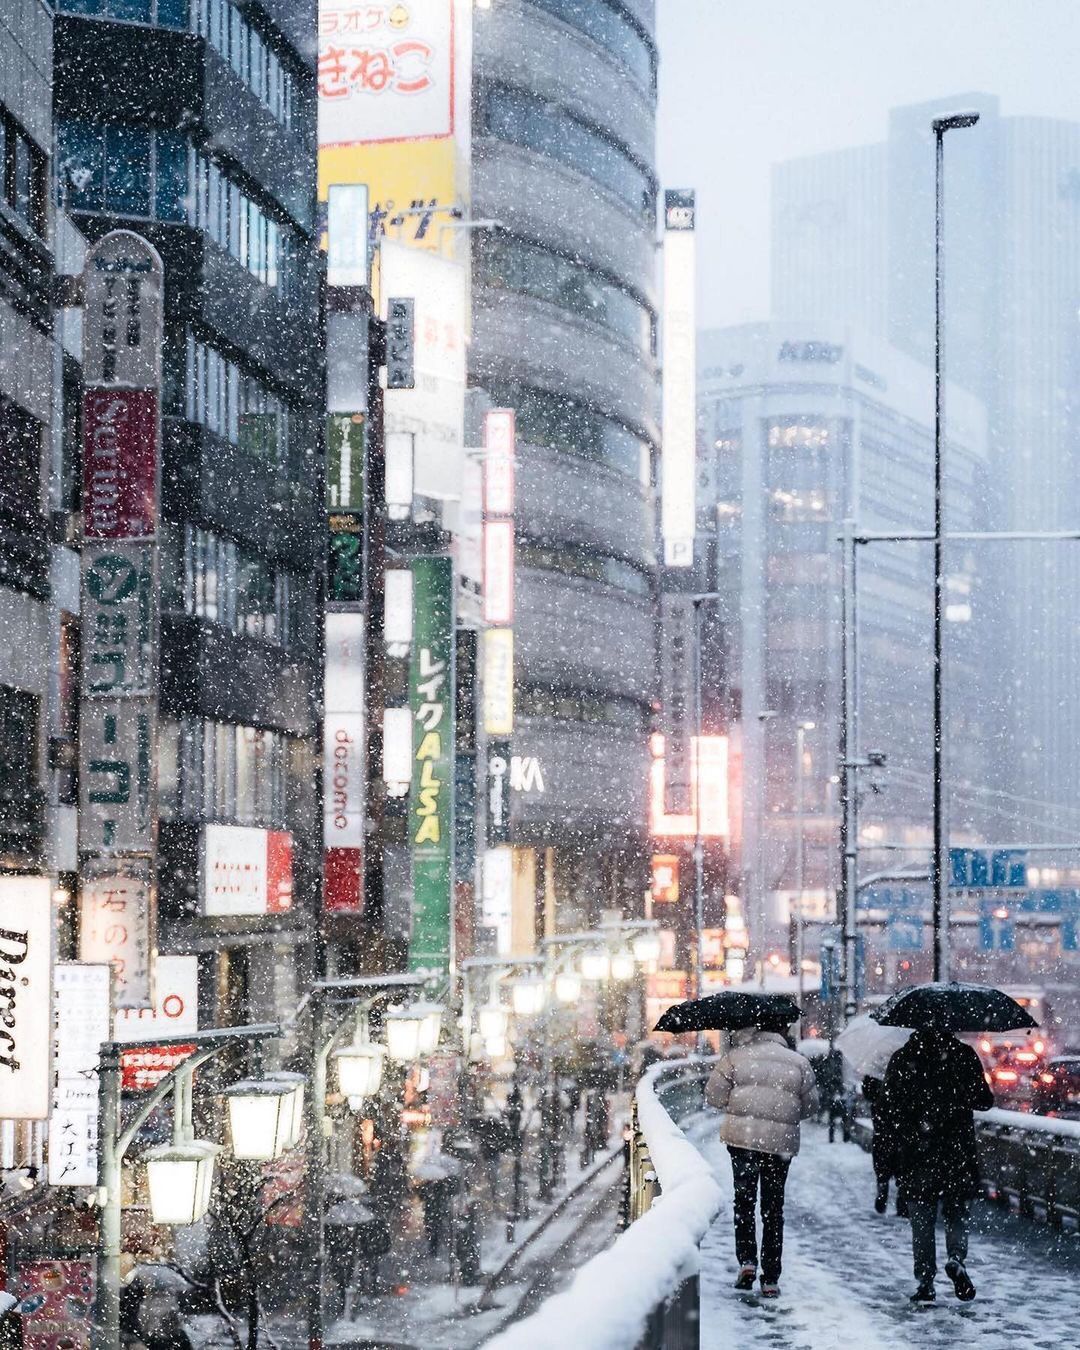 Chùm ảnh: Khung cảnh Tokyo dưới tuyết trắng đẹp đến nao lòng, phảng phất nét buồn tựa cổ tích mùa đông - Ảnh 5.